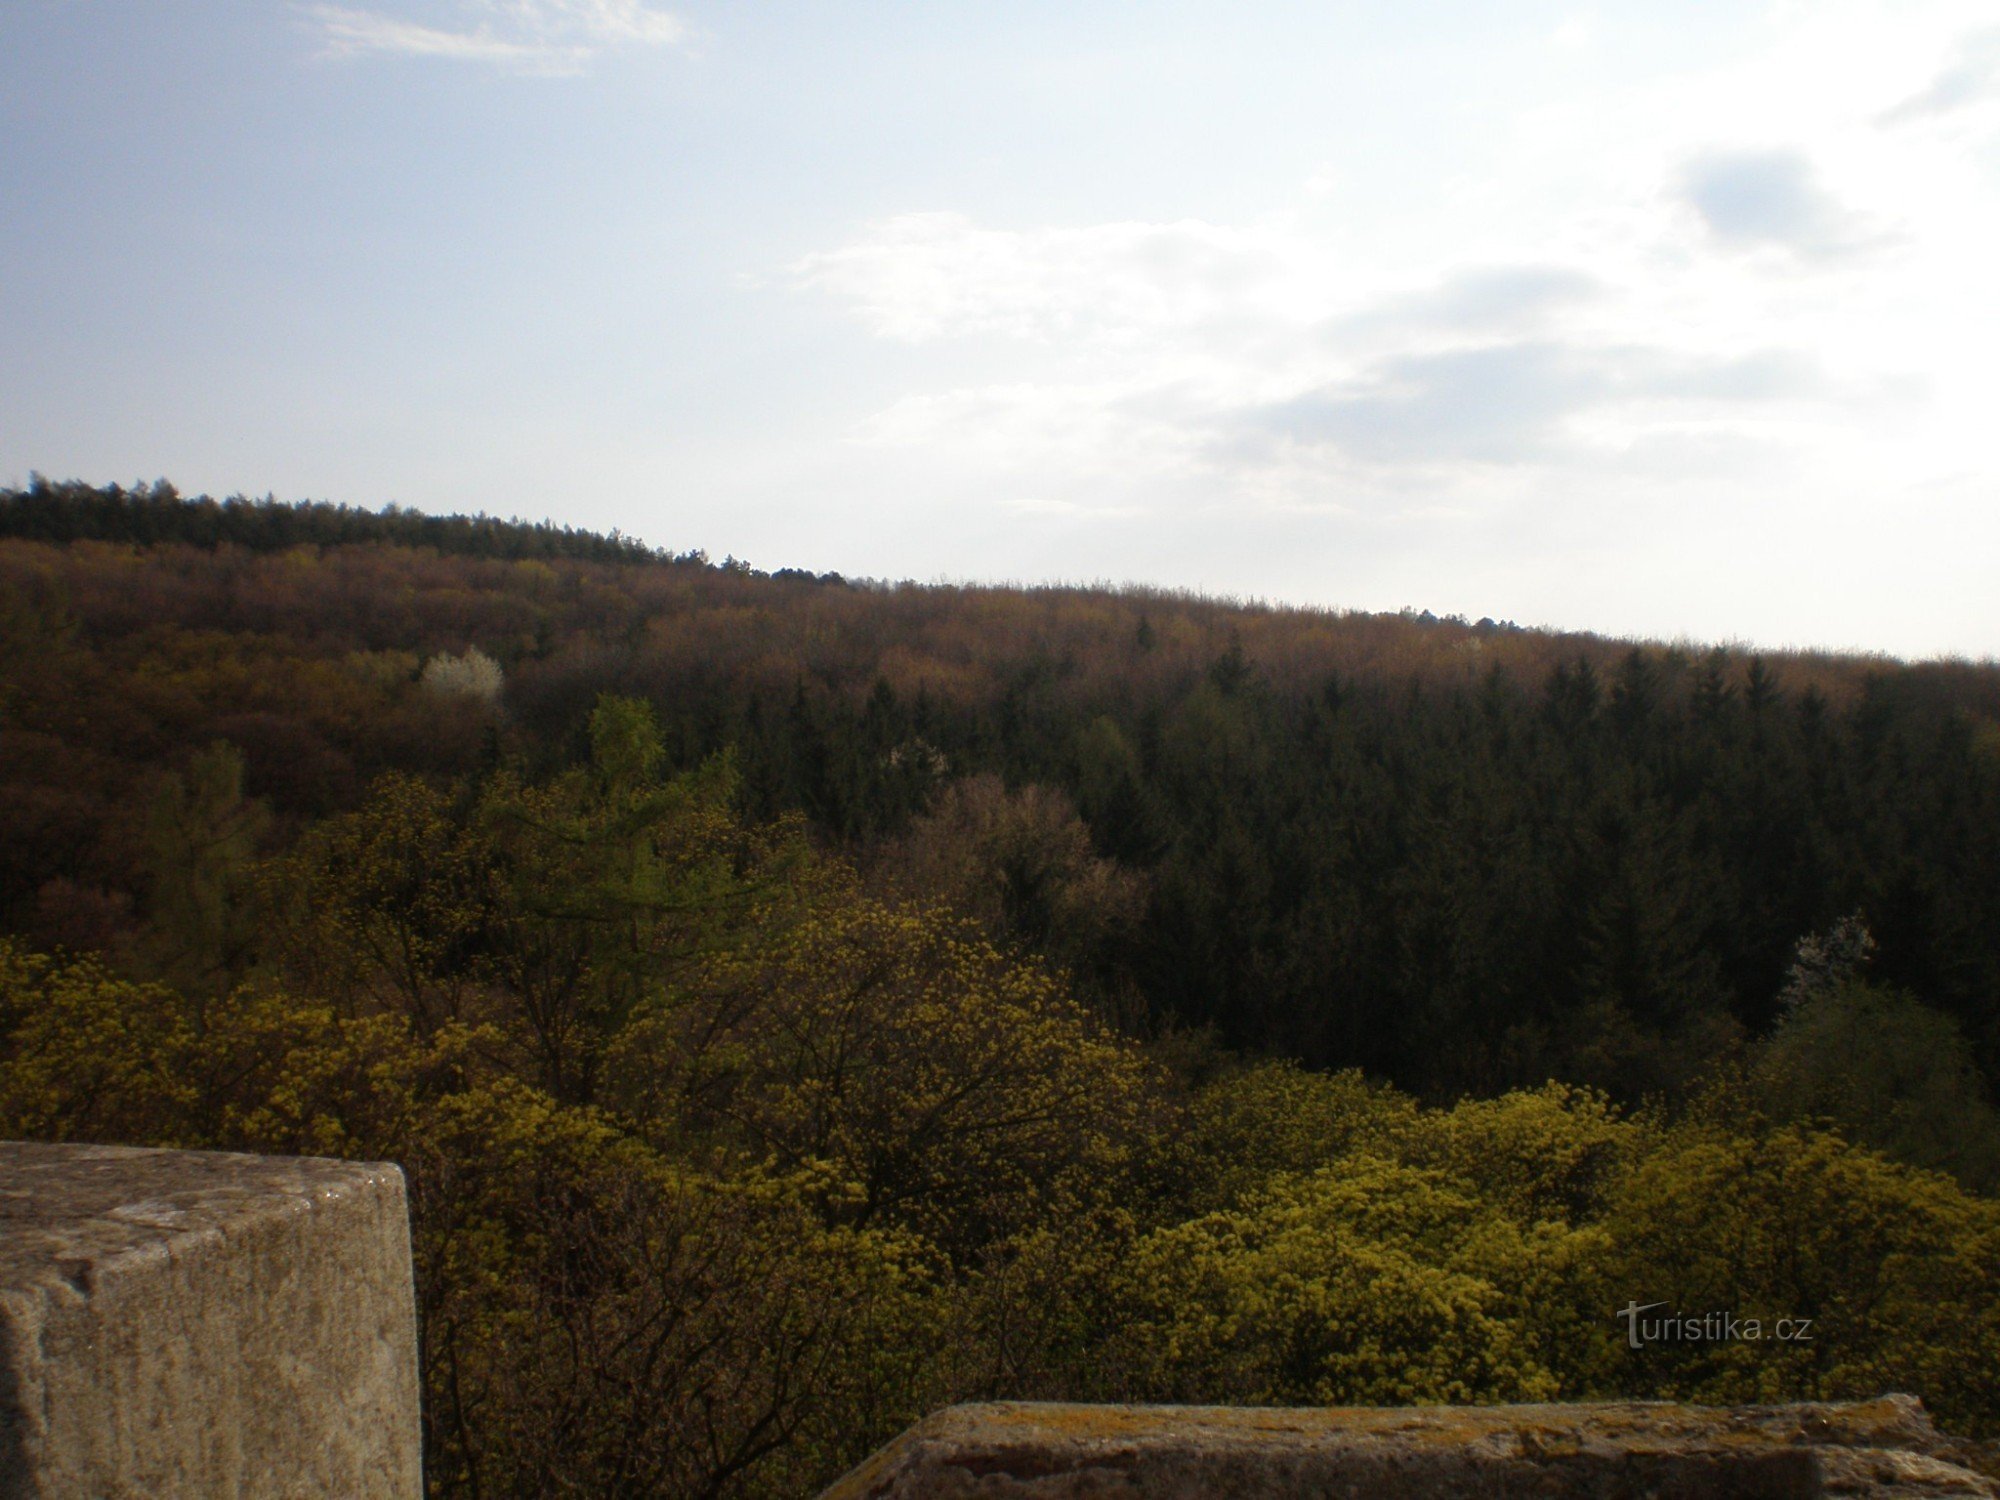 Widok z wieży widokowej na park leśny Cibulka